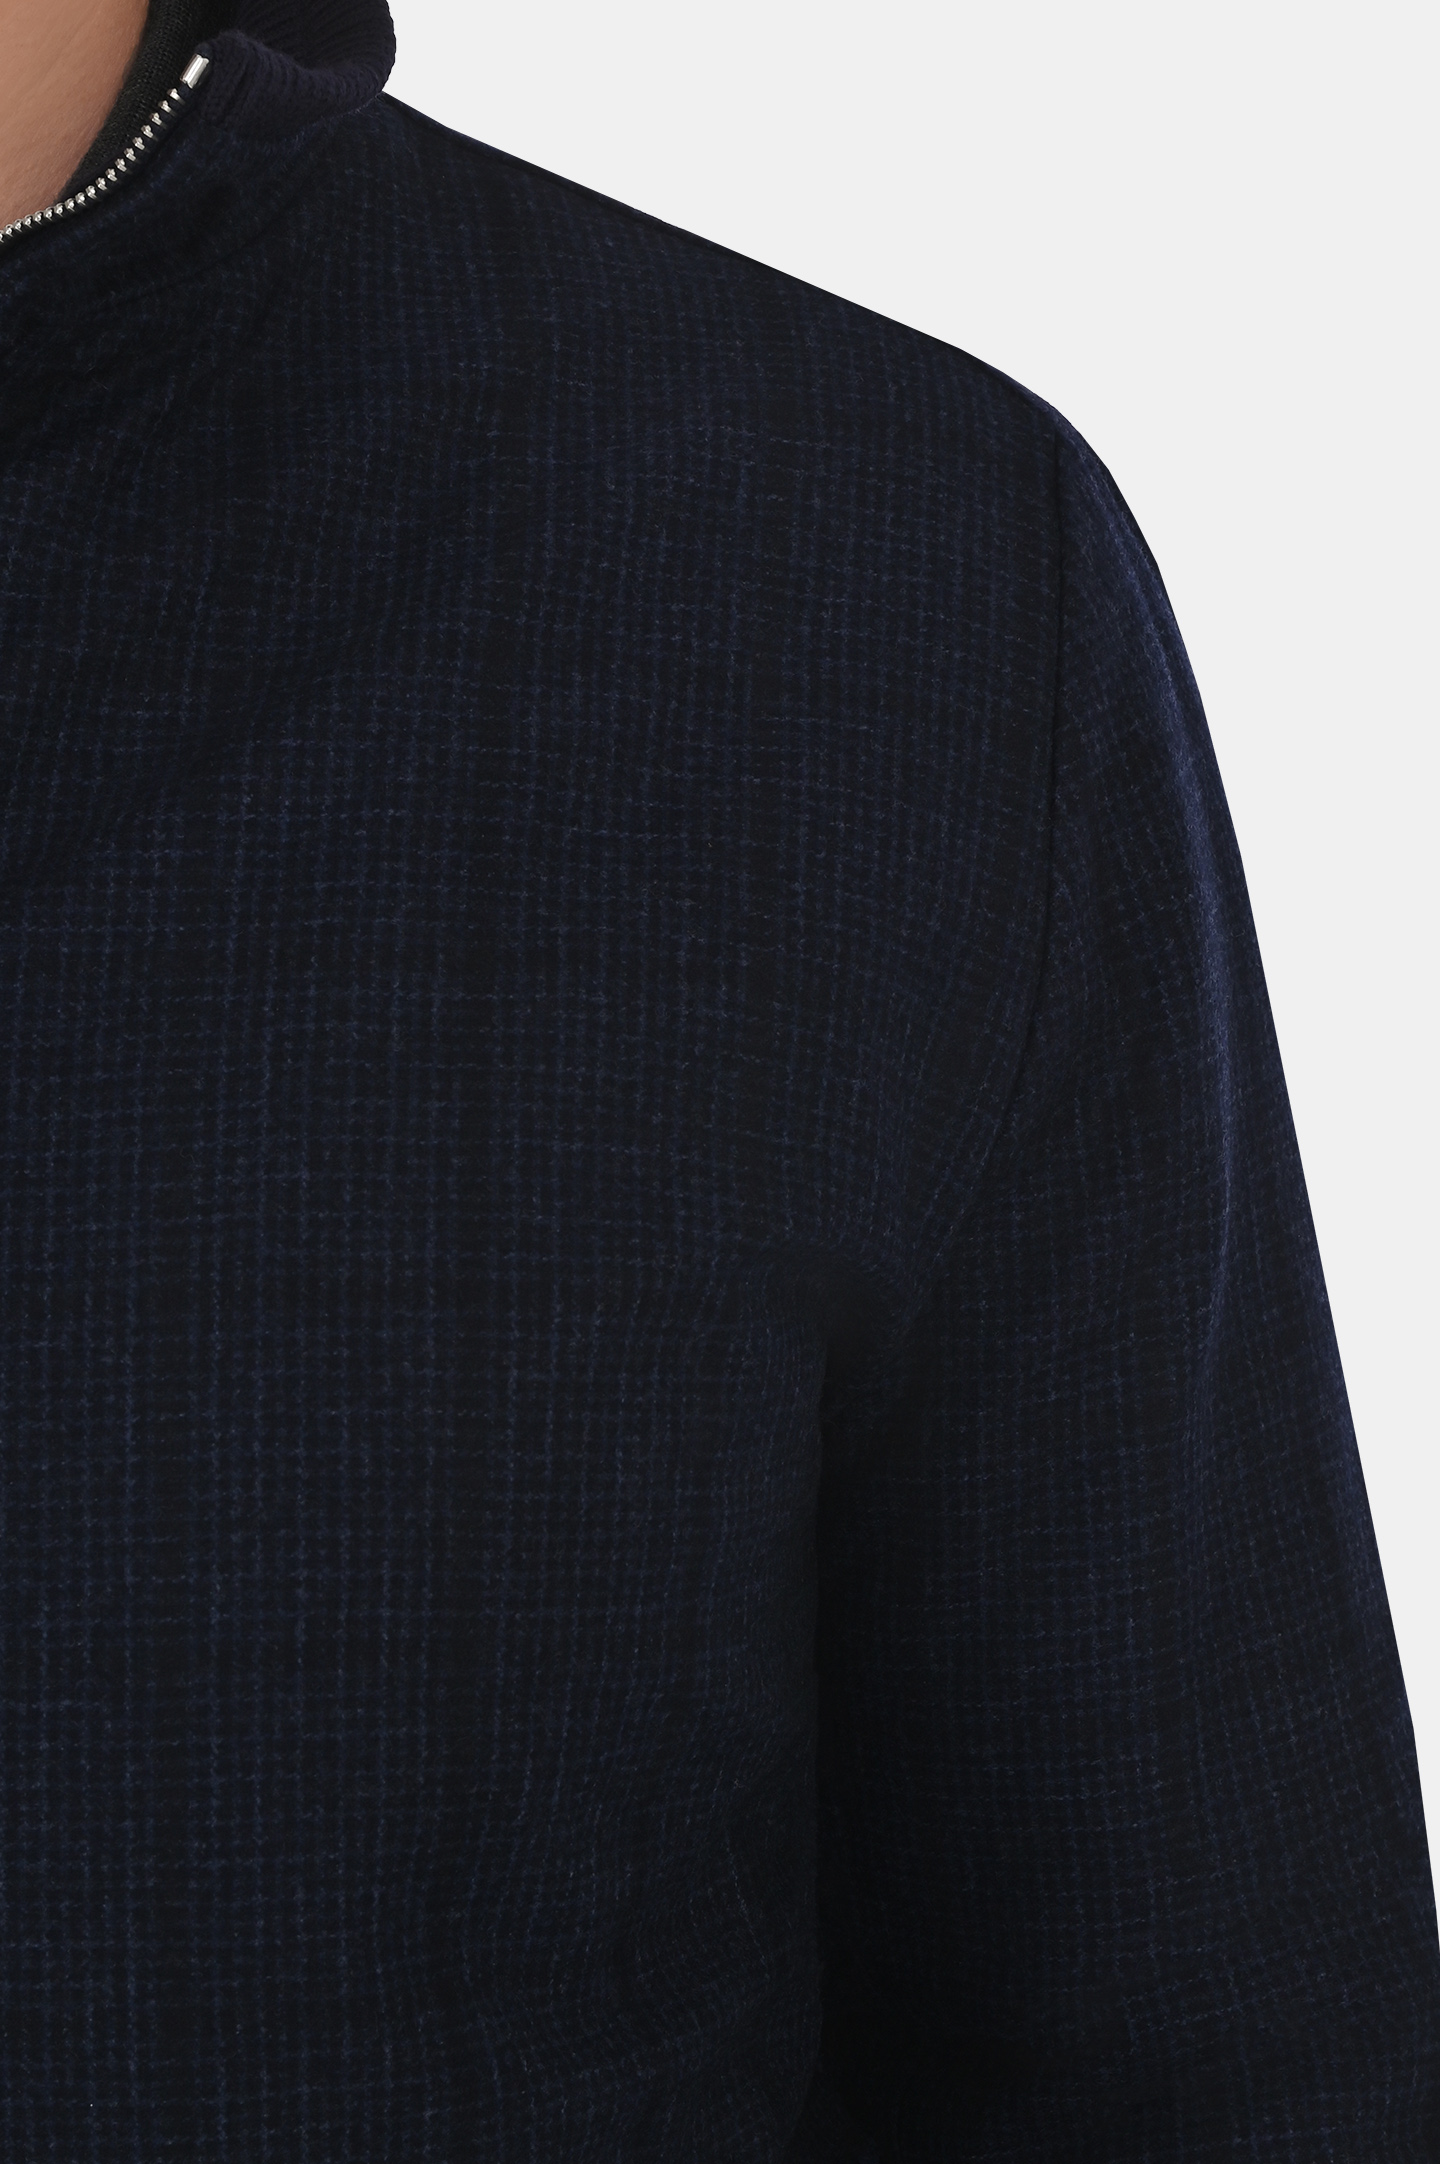 Куртка CASTANGIA MOD.102, цвет: Темно-синий, Мужской